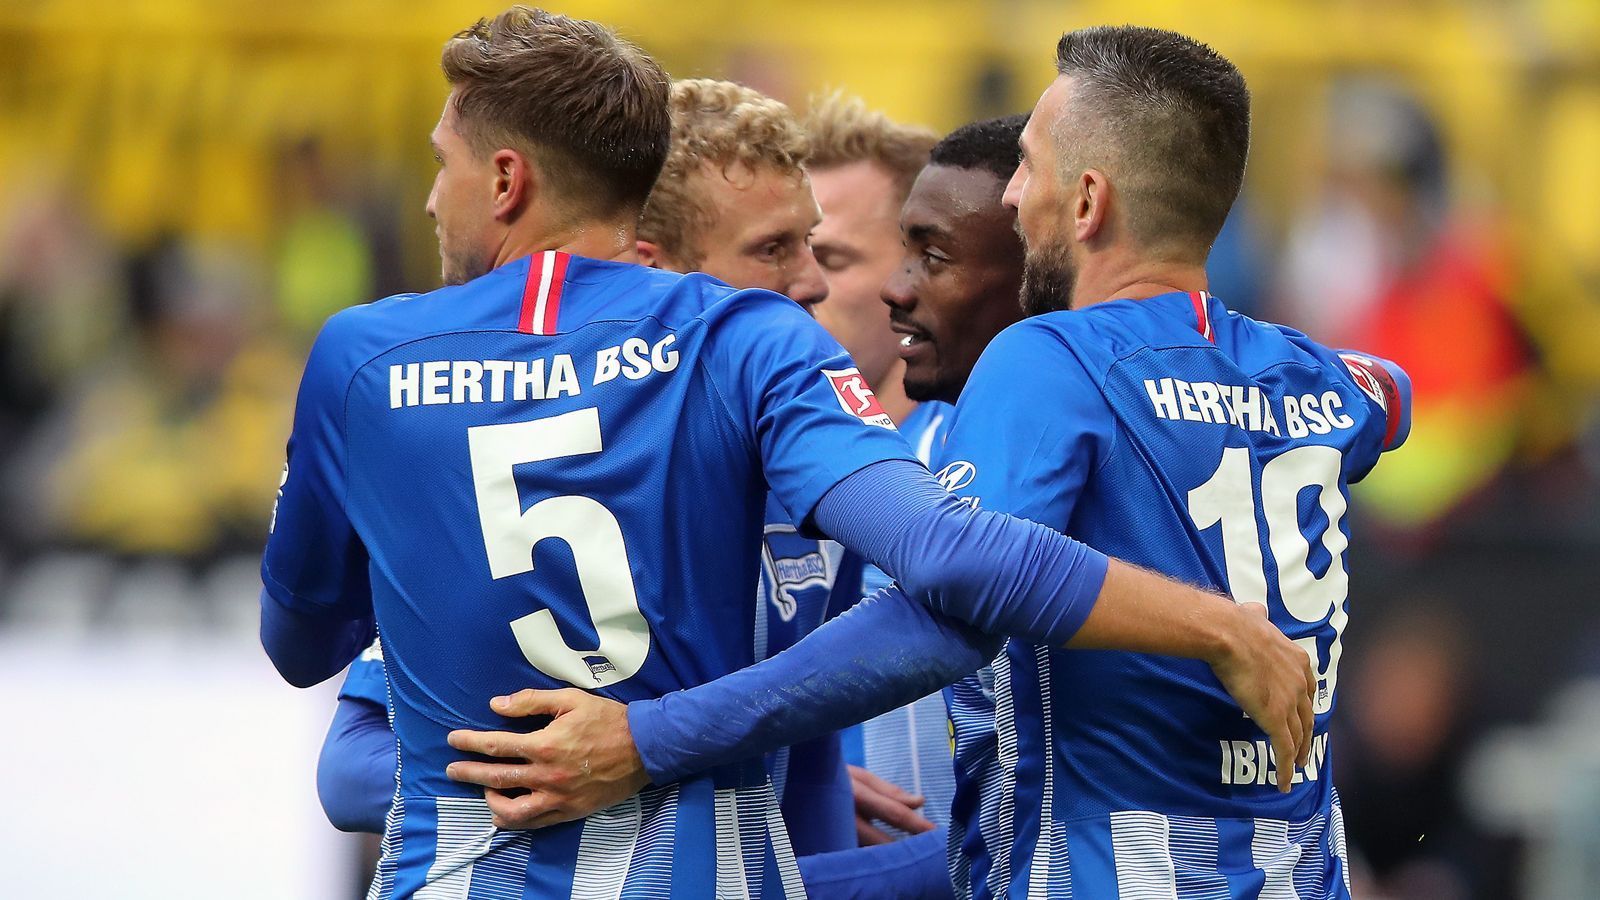 
                <strong>Platz 12 - Hertha BSC</strong><br>
                Durchschnittliches Gehalt: 940.000 Euro
              